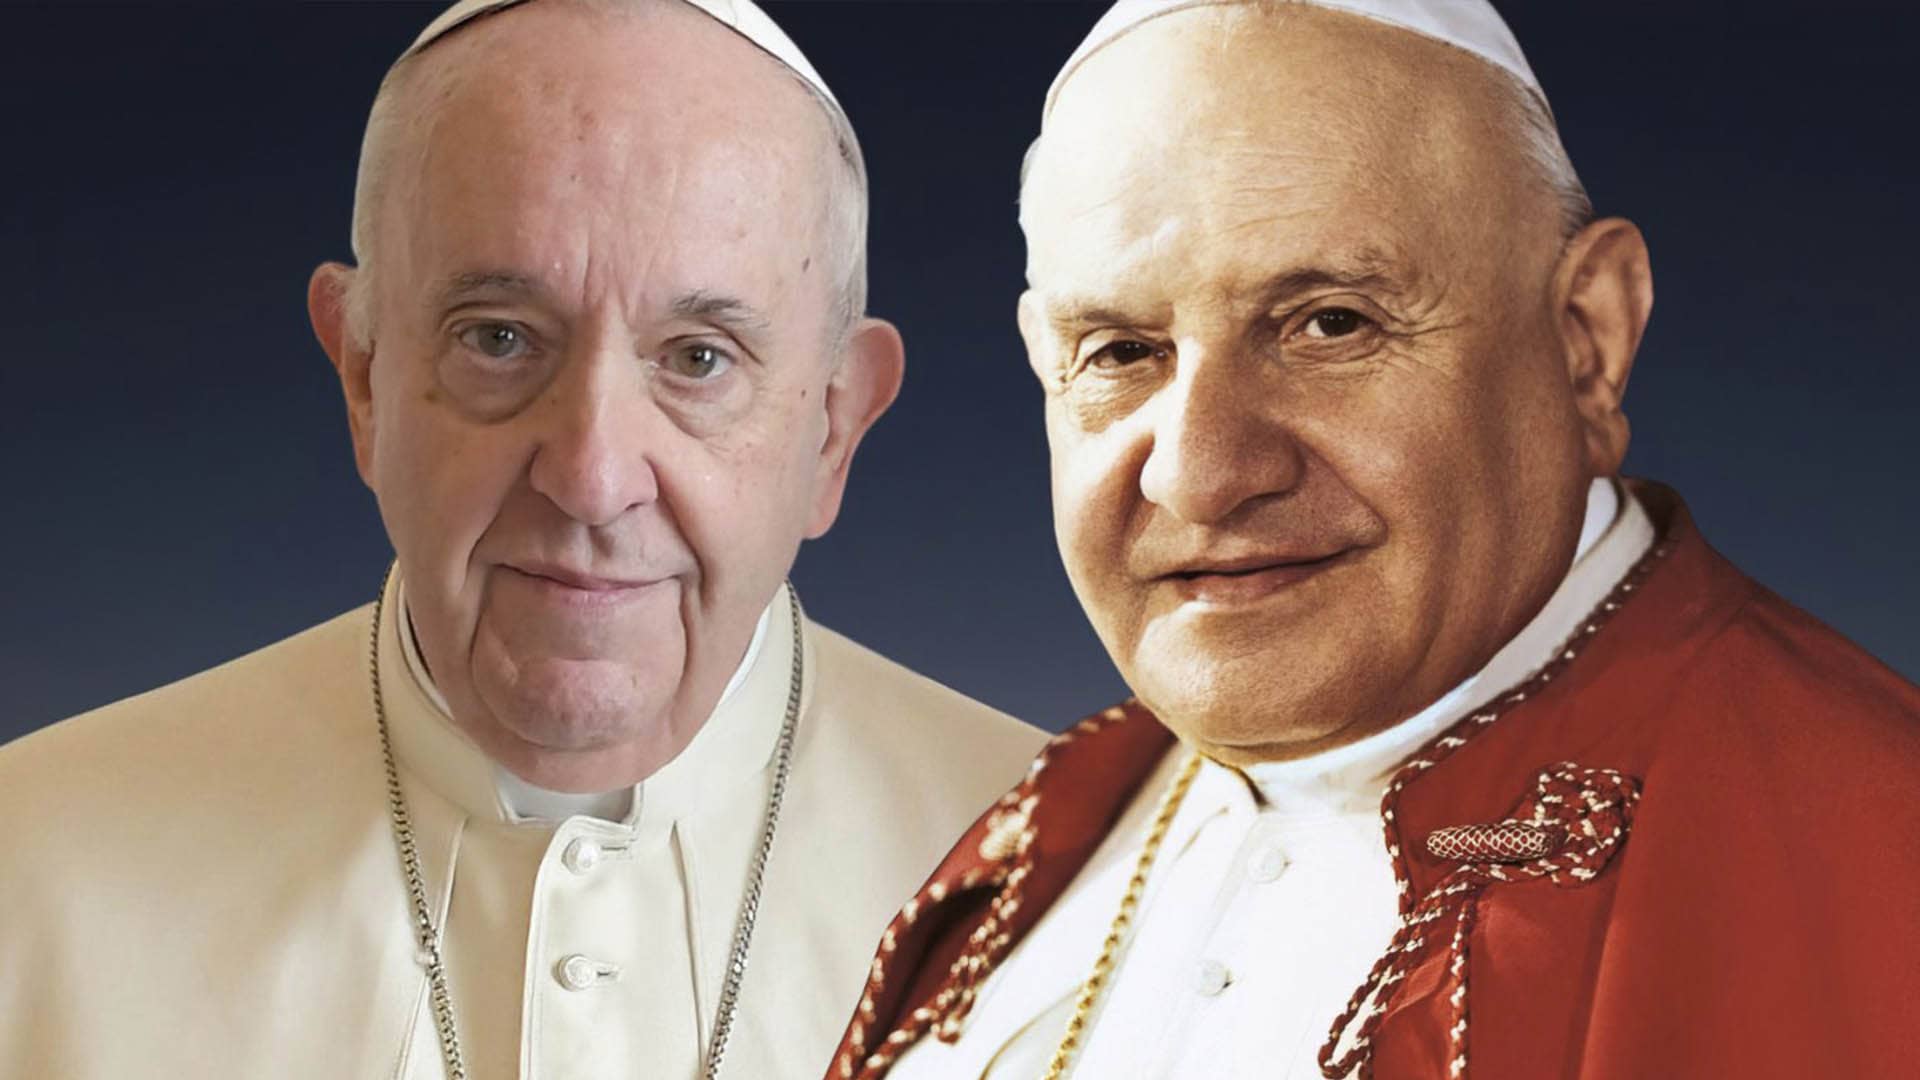 Francisco-Juan XXIII